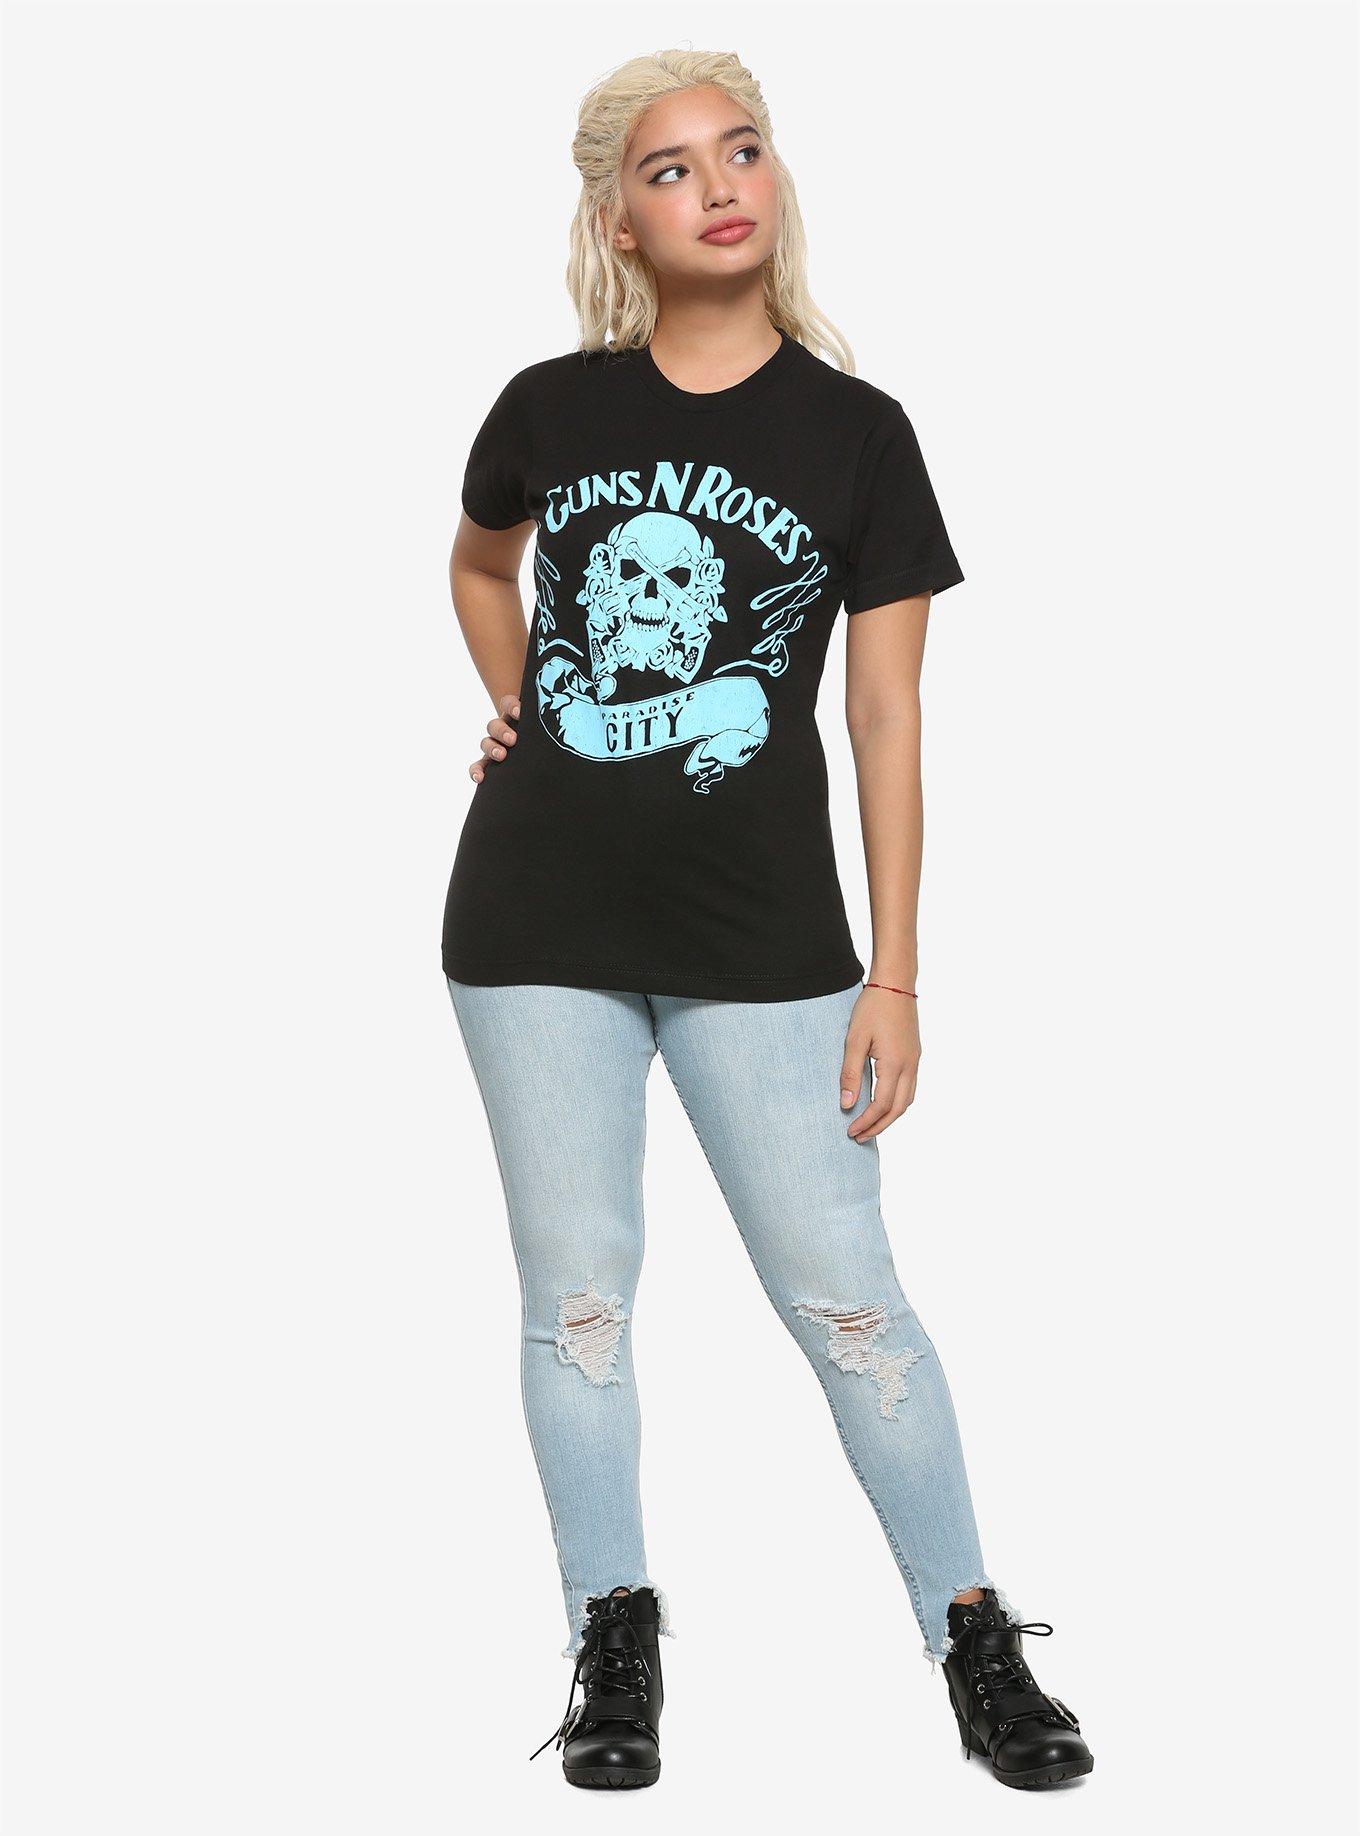 Guns N' Roses Paradise City Logo Girls T-Shirt, BLACK, alternate